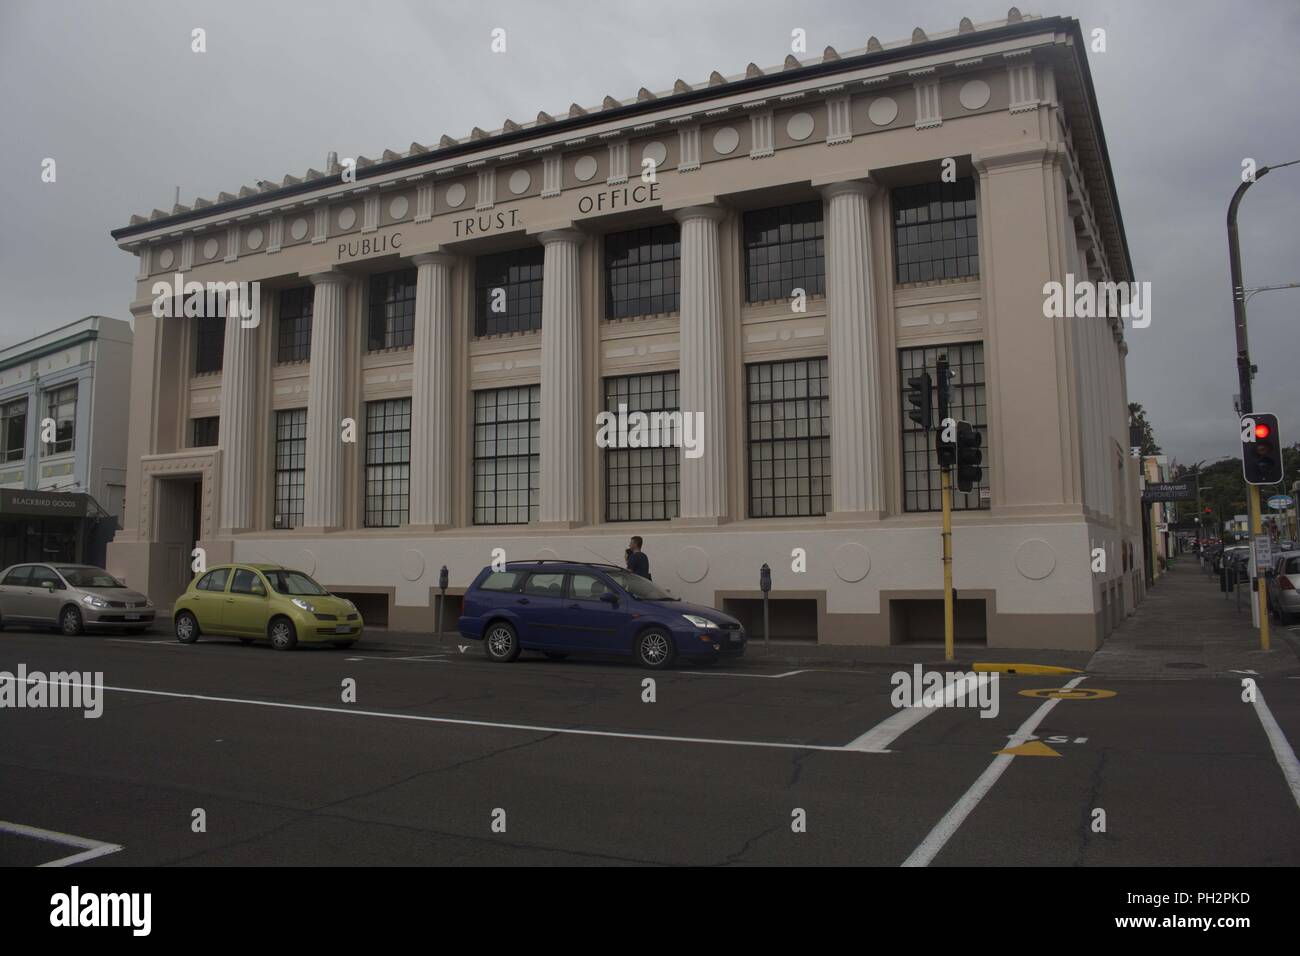 Fassade des öffentlichen Vertrauens Bürogebäude, einem klassischen Gebäude in Napier, Neuseeland an einem bewölkten Tag, 29. November 2017. () Stockfoto